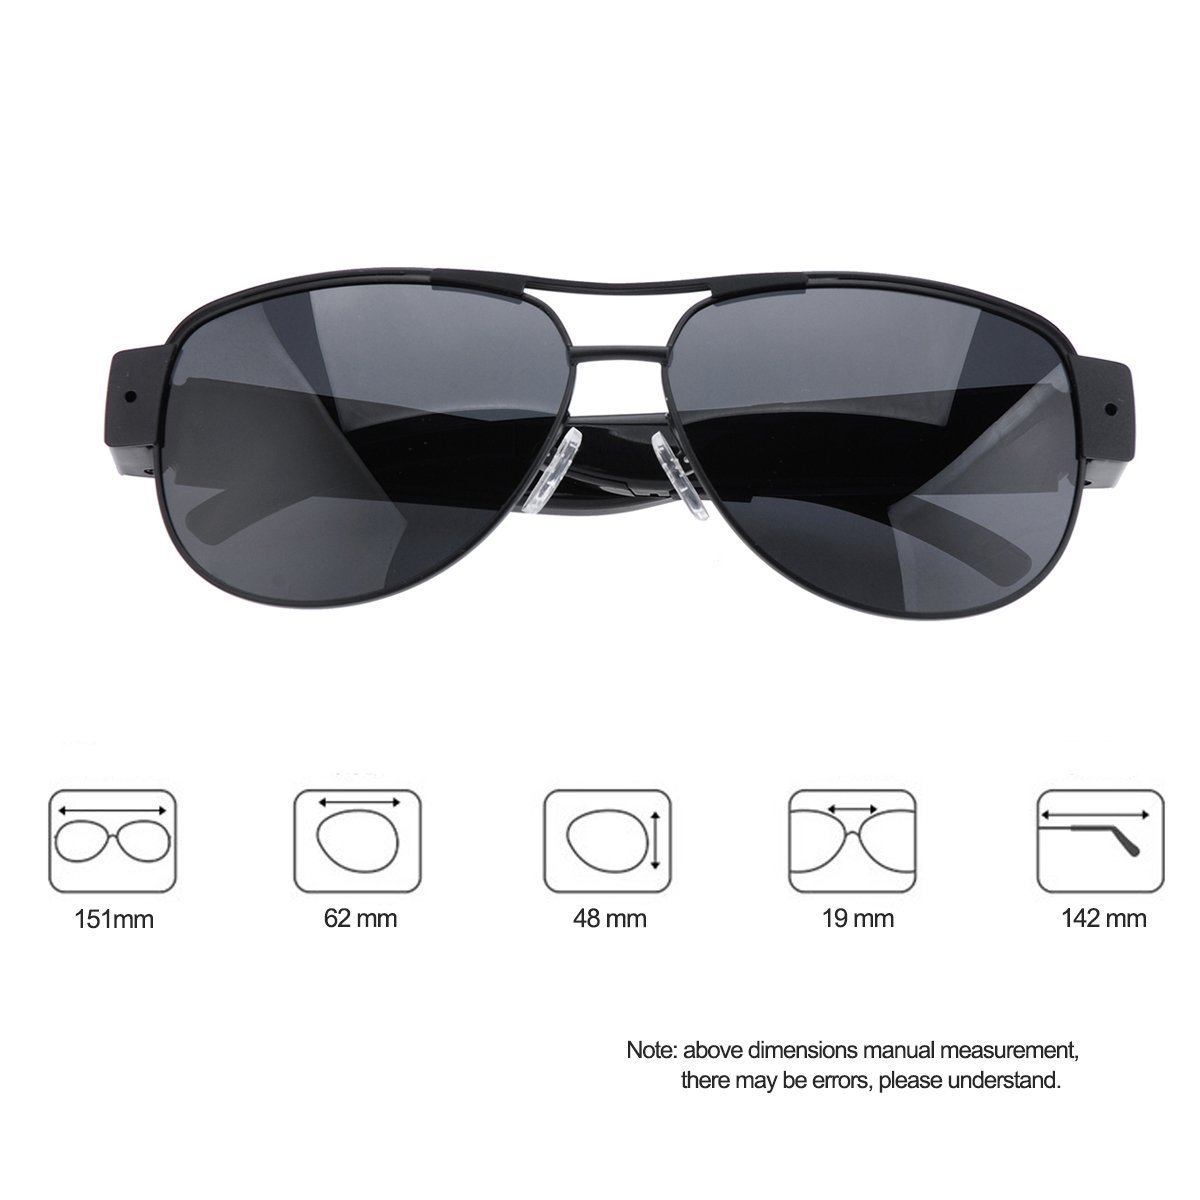 Sunglasses Camera, Full HD 1080P Stylish Eyewear Camera Mini Video ...